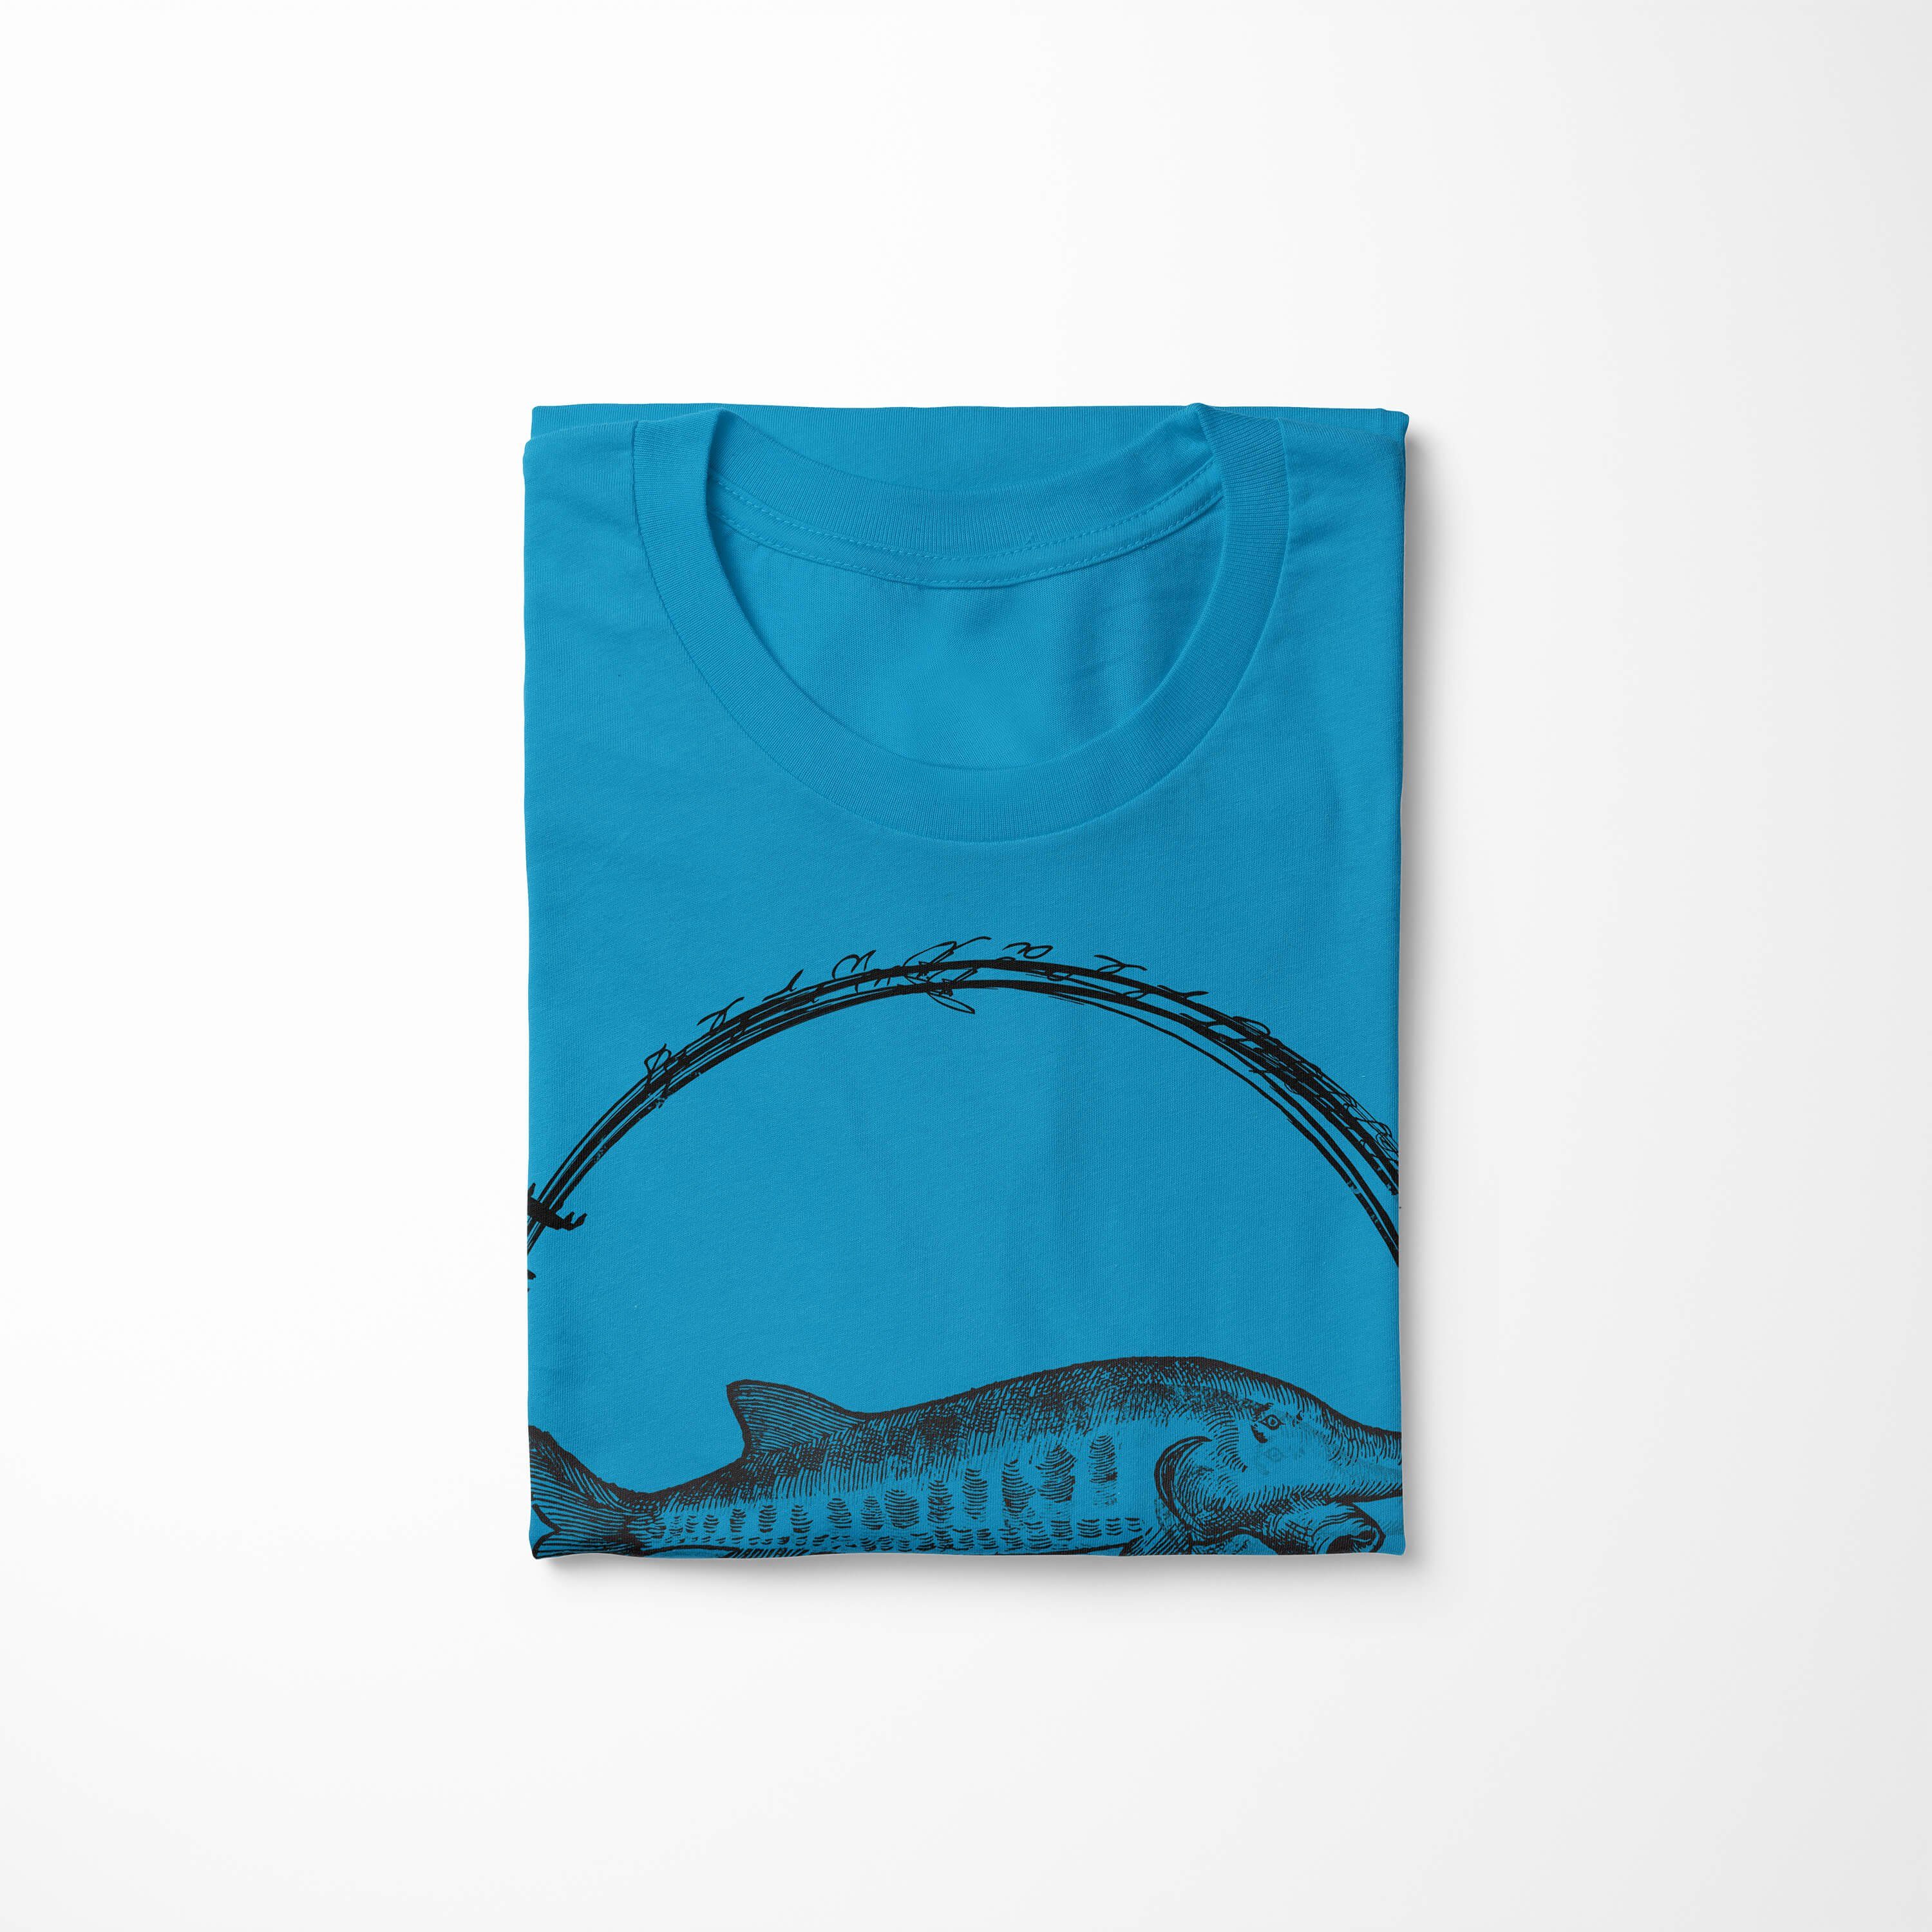 Sea Schnitt und Fische 090 sportlicher T-Shirt Sinus Creatures, / Art Sea - Serie: Tiefsee Atoll Struktur T-Shirt feine